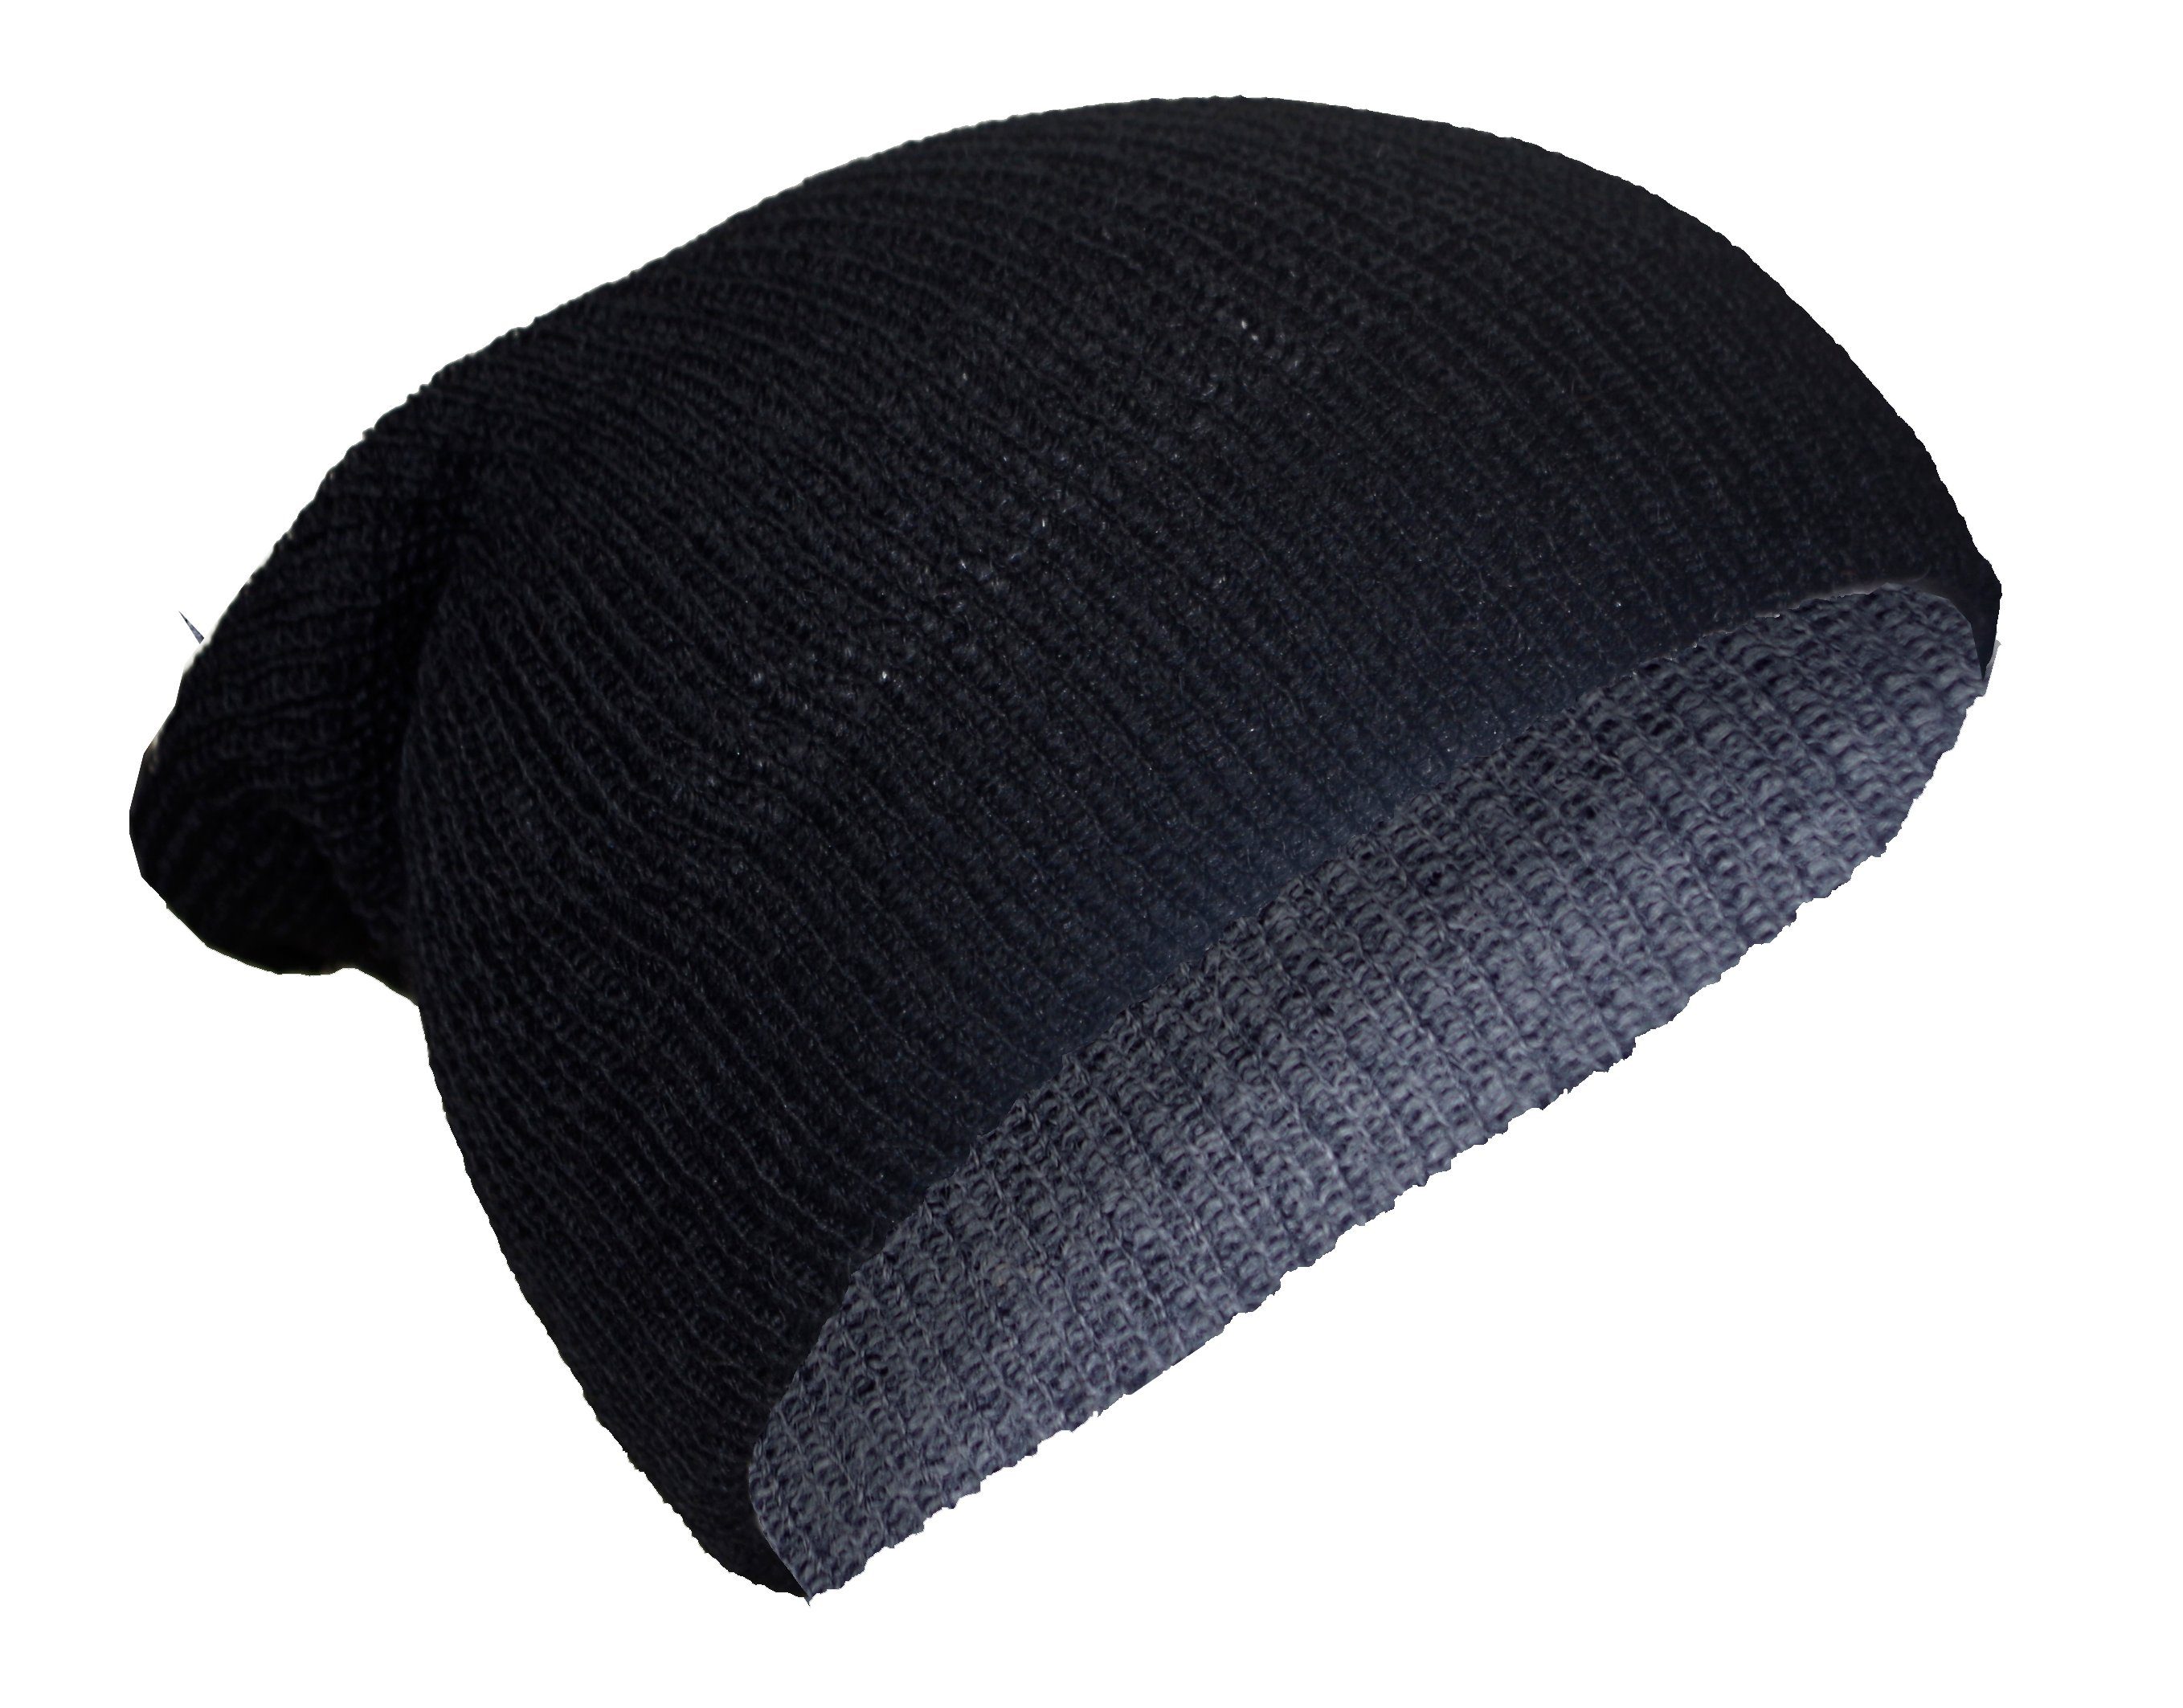 Posh Gear Strickmütze Alpaka Mütze Rettolana aus 100% Alpakawolle grau / schwarz